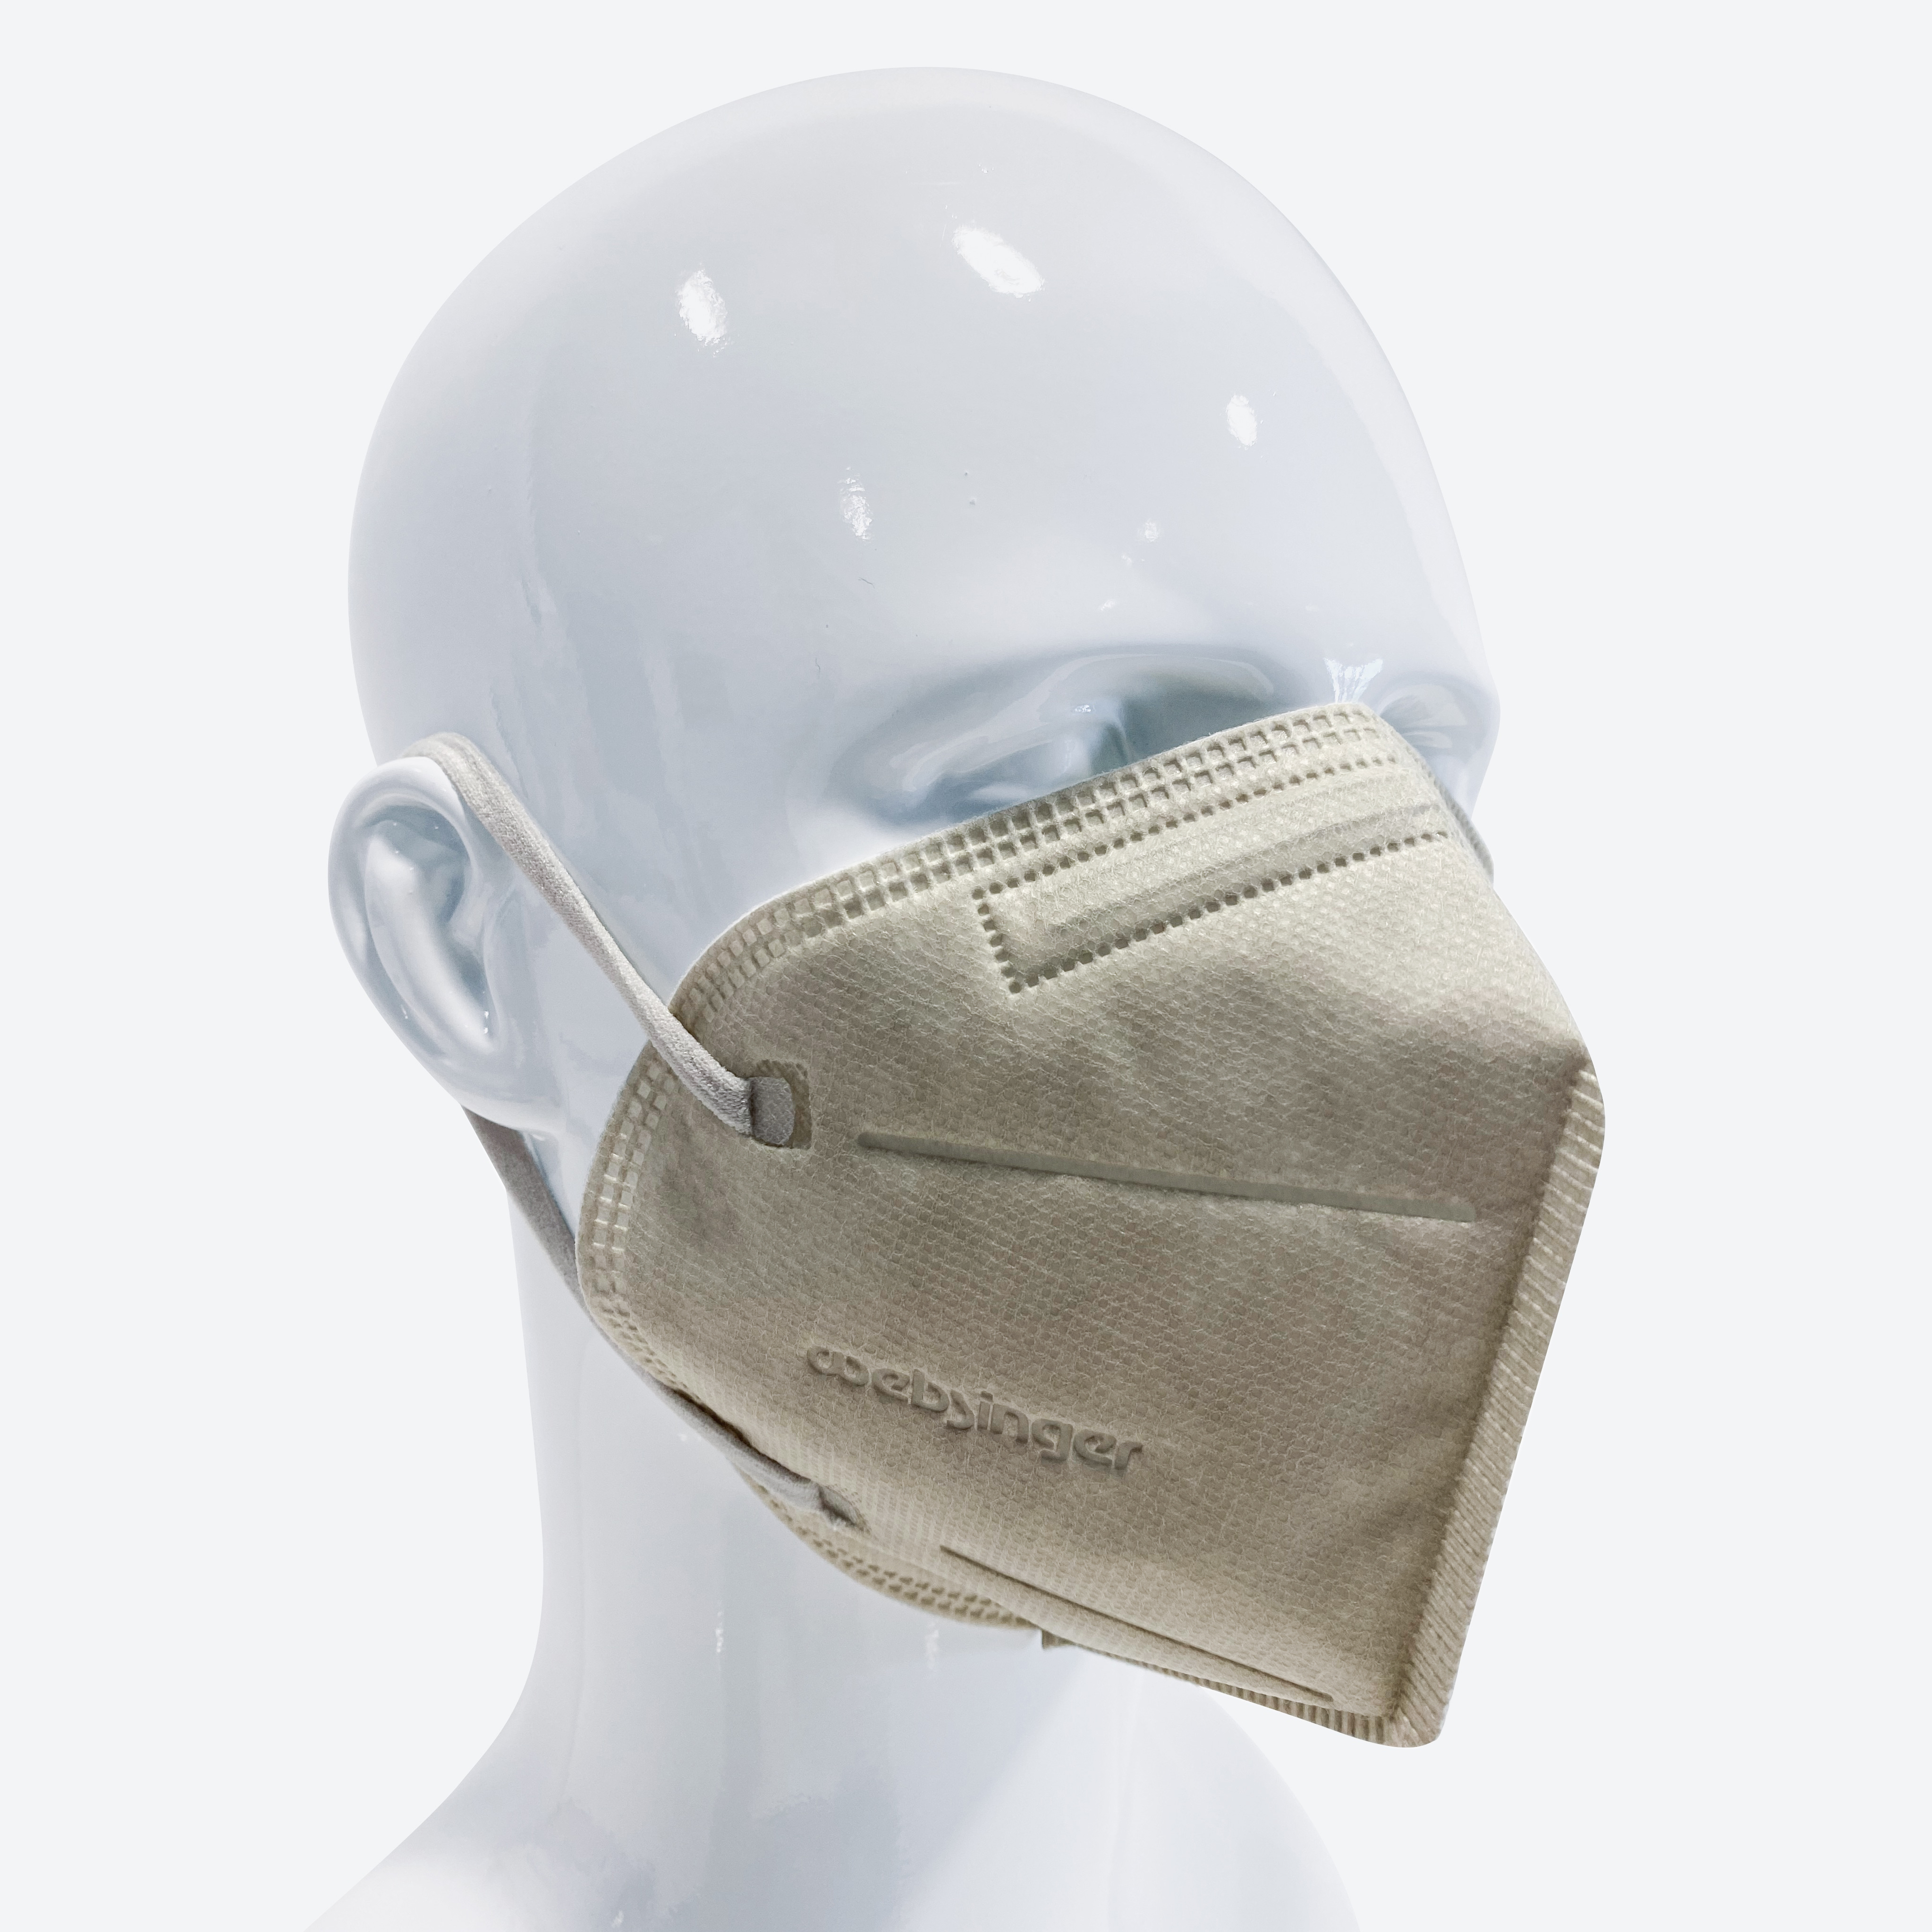 Qualitativ hochwertige FFP2-Schutzmasken MULTI-COLOR EDITION